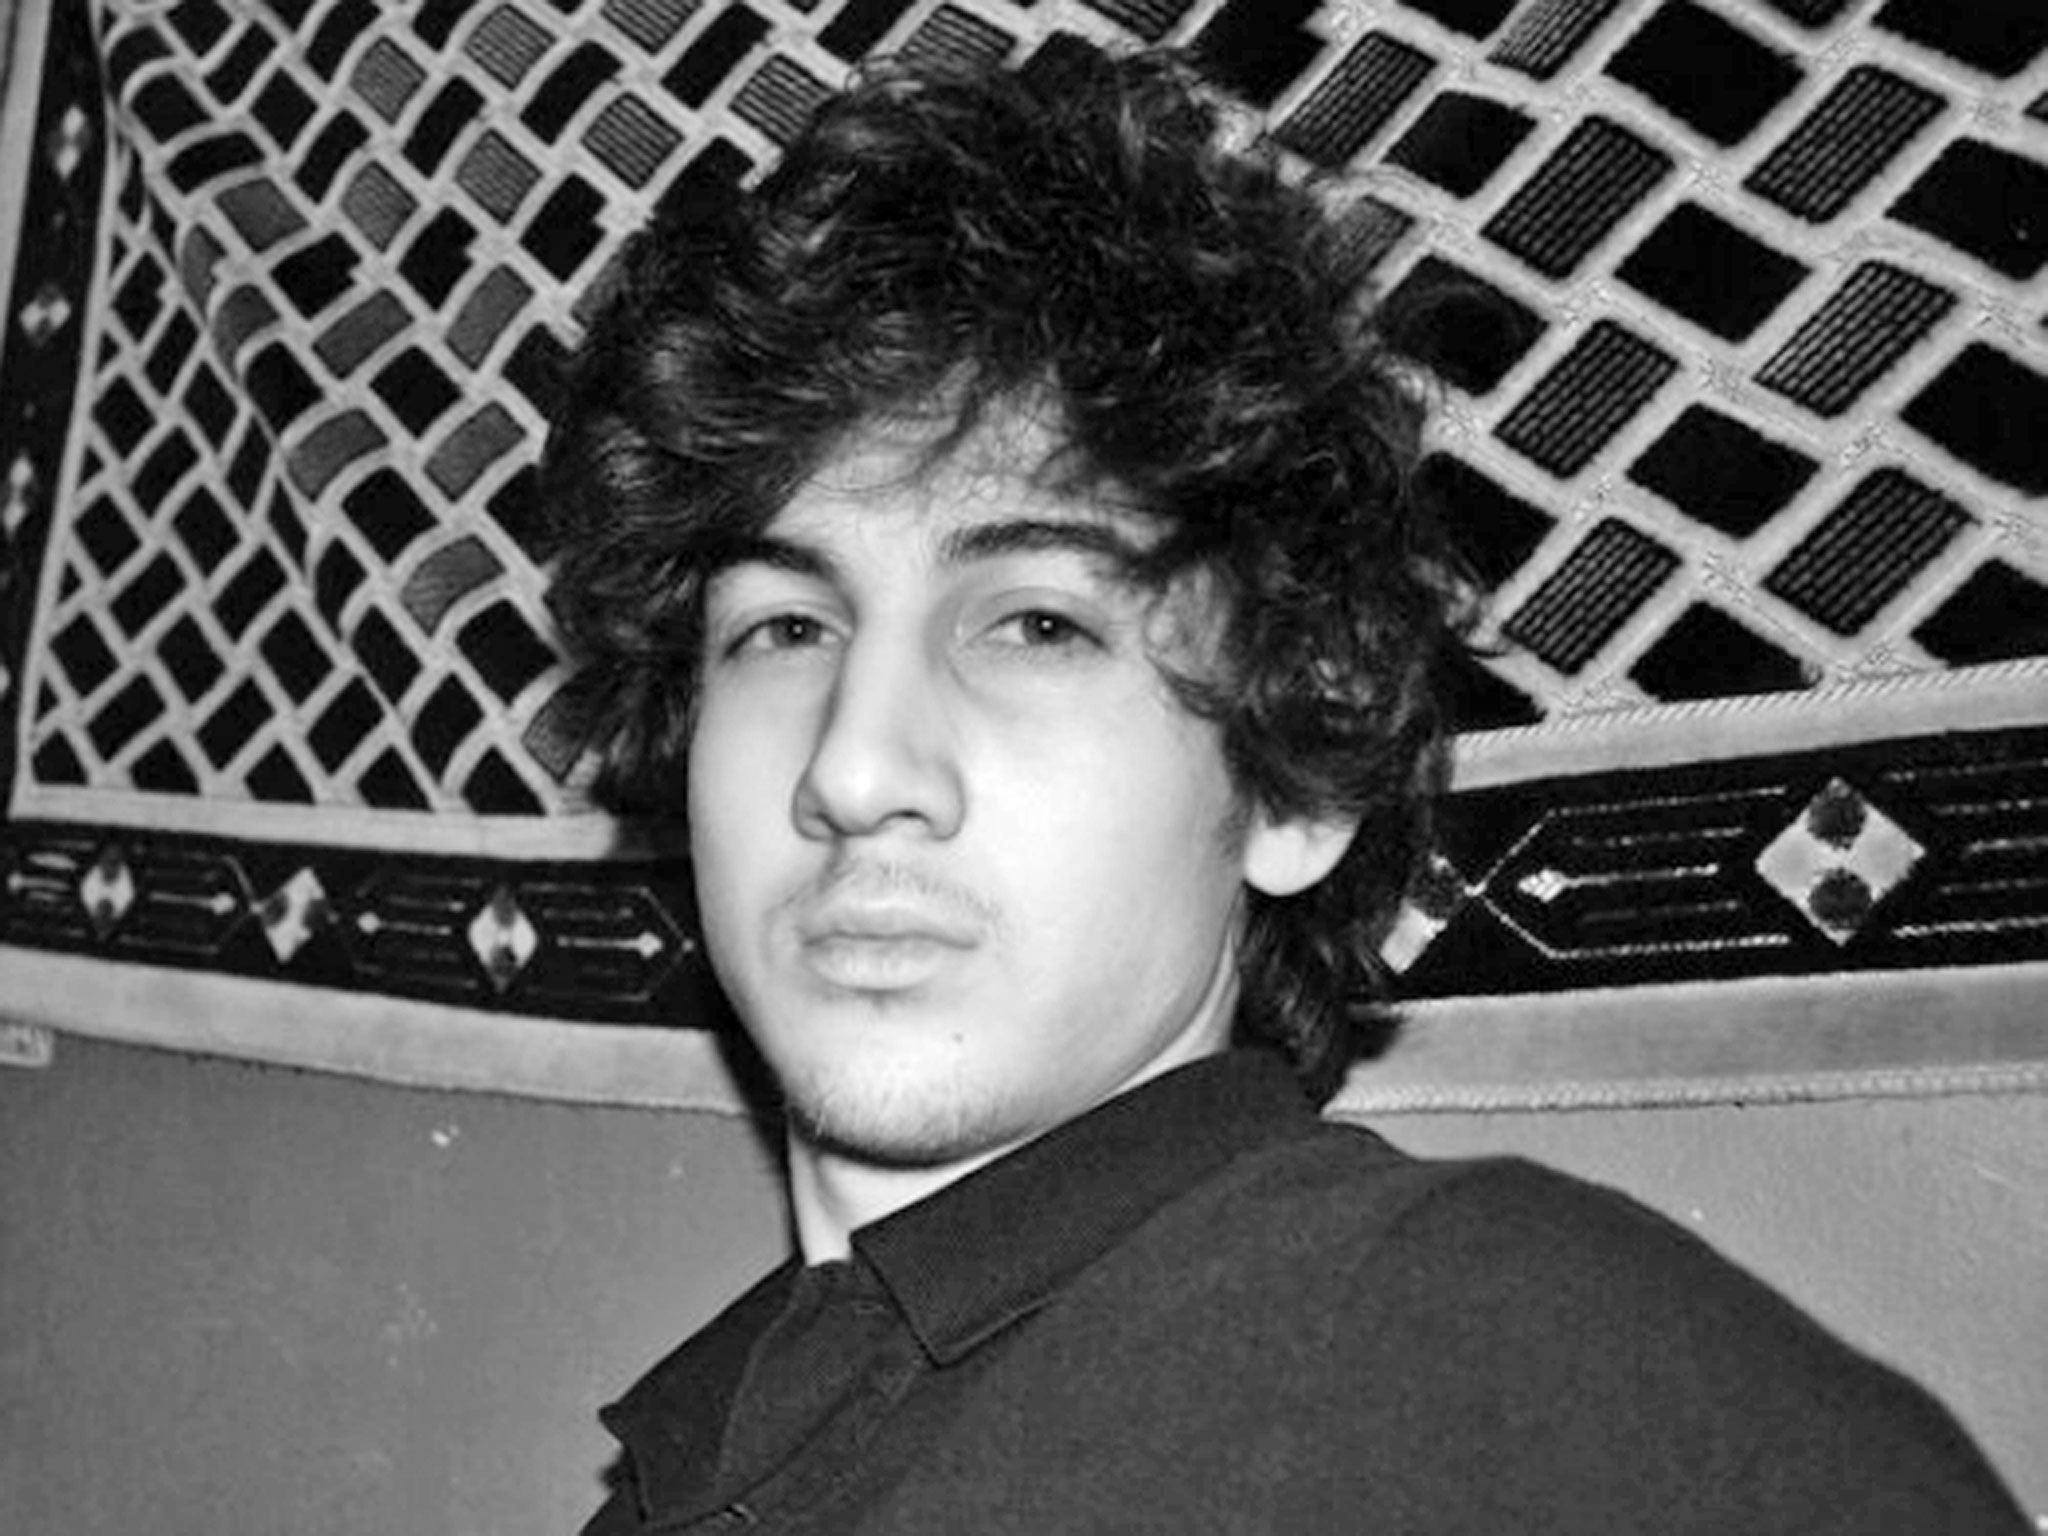 Second suspect of Boston Marathon bombing Dzhokhar A Tsarnaev